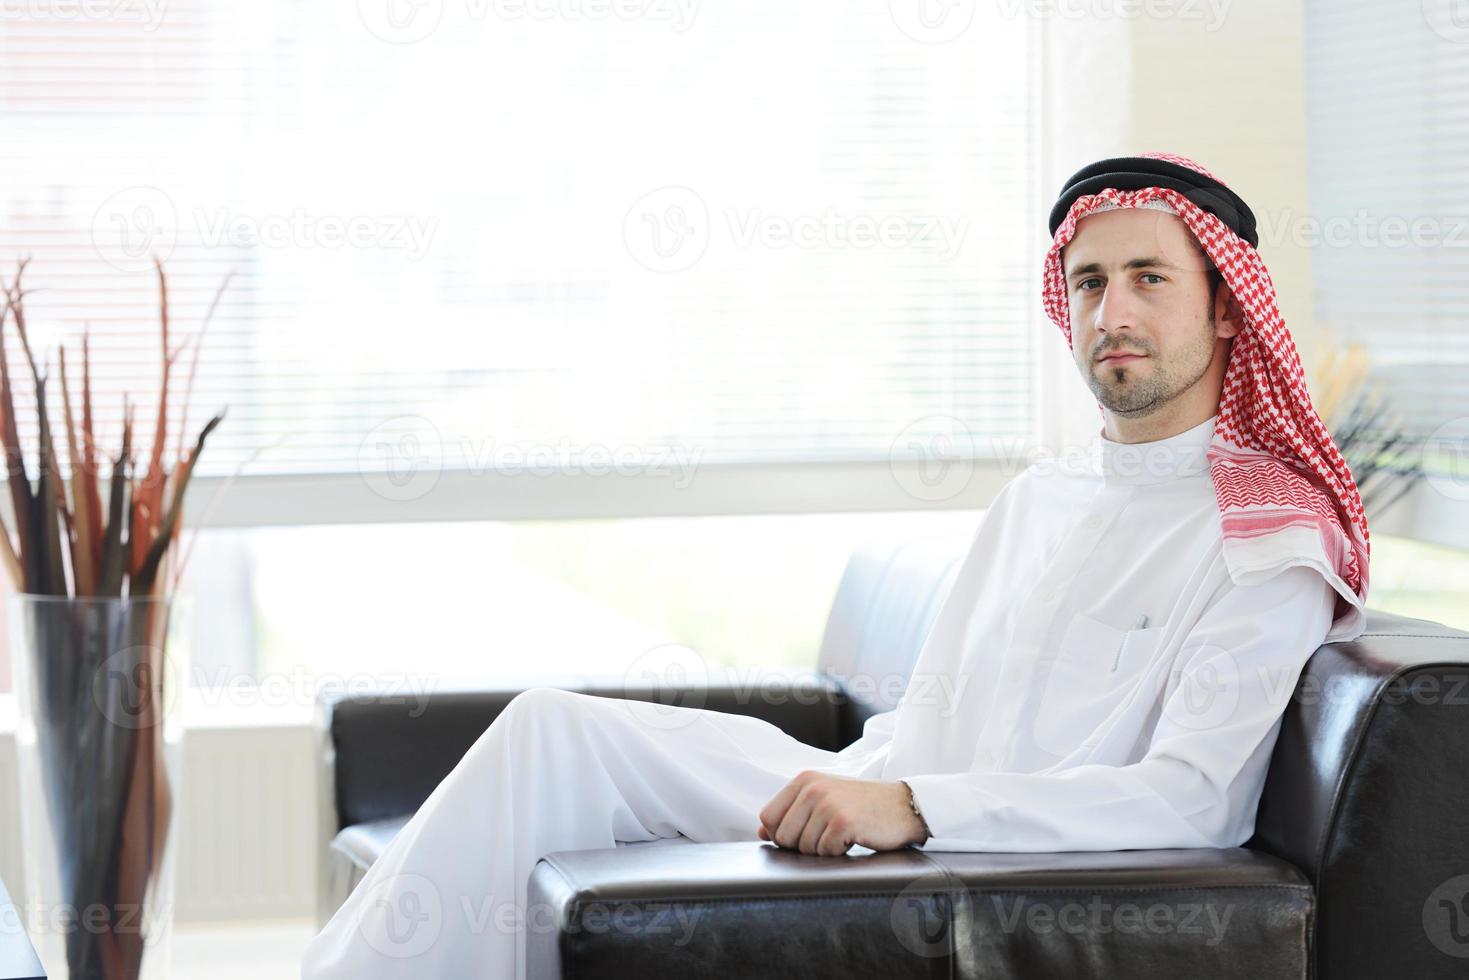 pessoas do Oriente Médio, tendo uma reunião de negócios no escritório foto